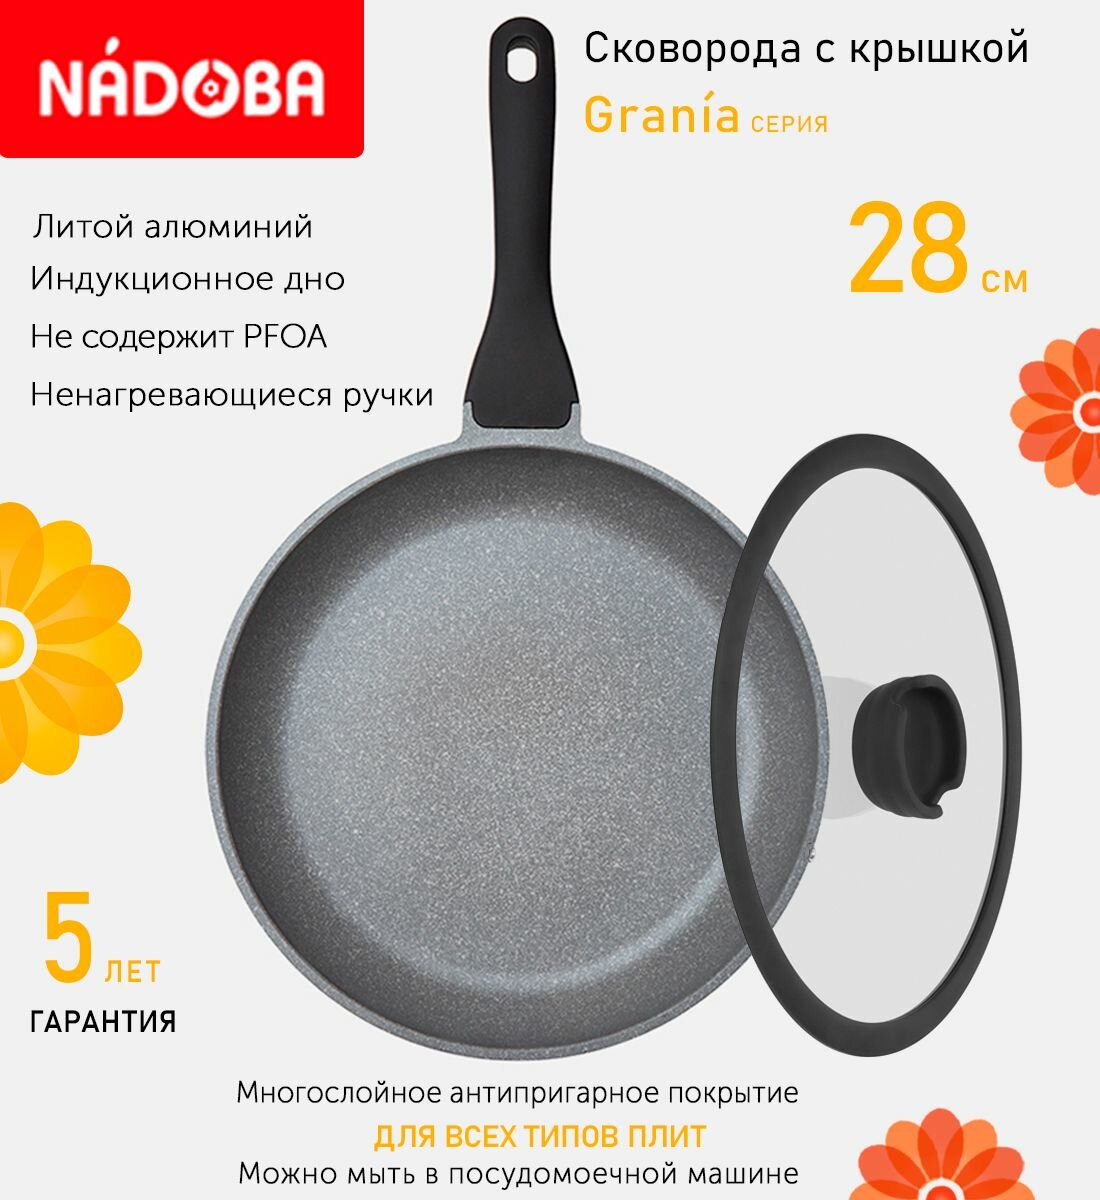 Сковорода с крышкой NADOBA 28см, серия "Grania" (арт. 728116/751011)